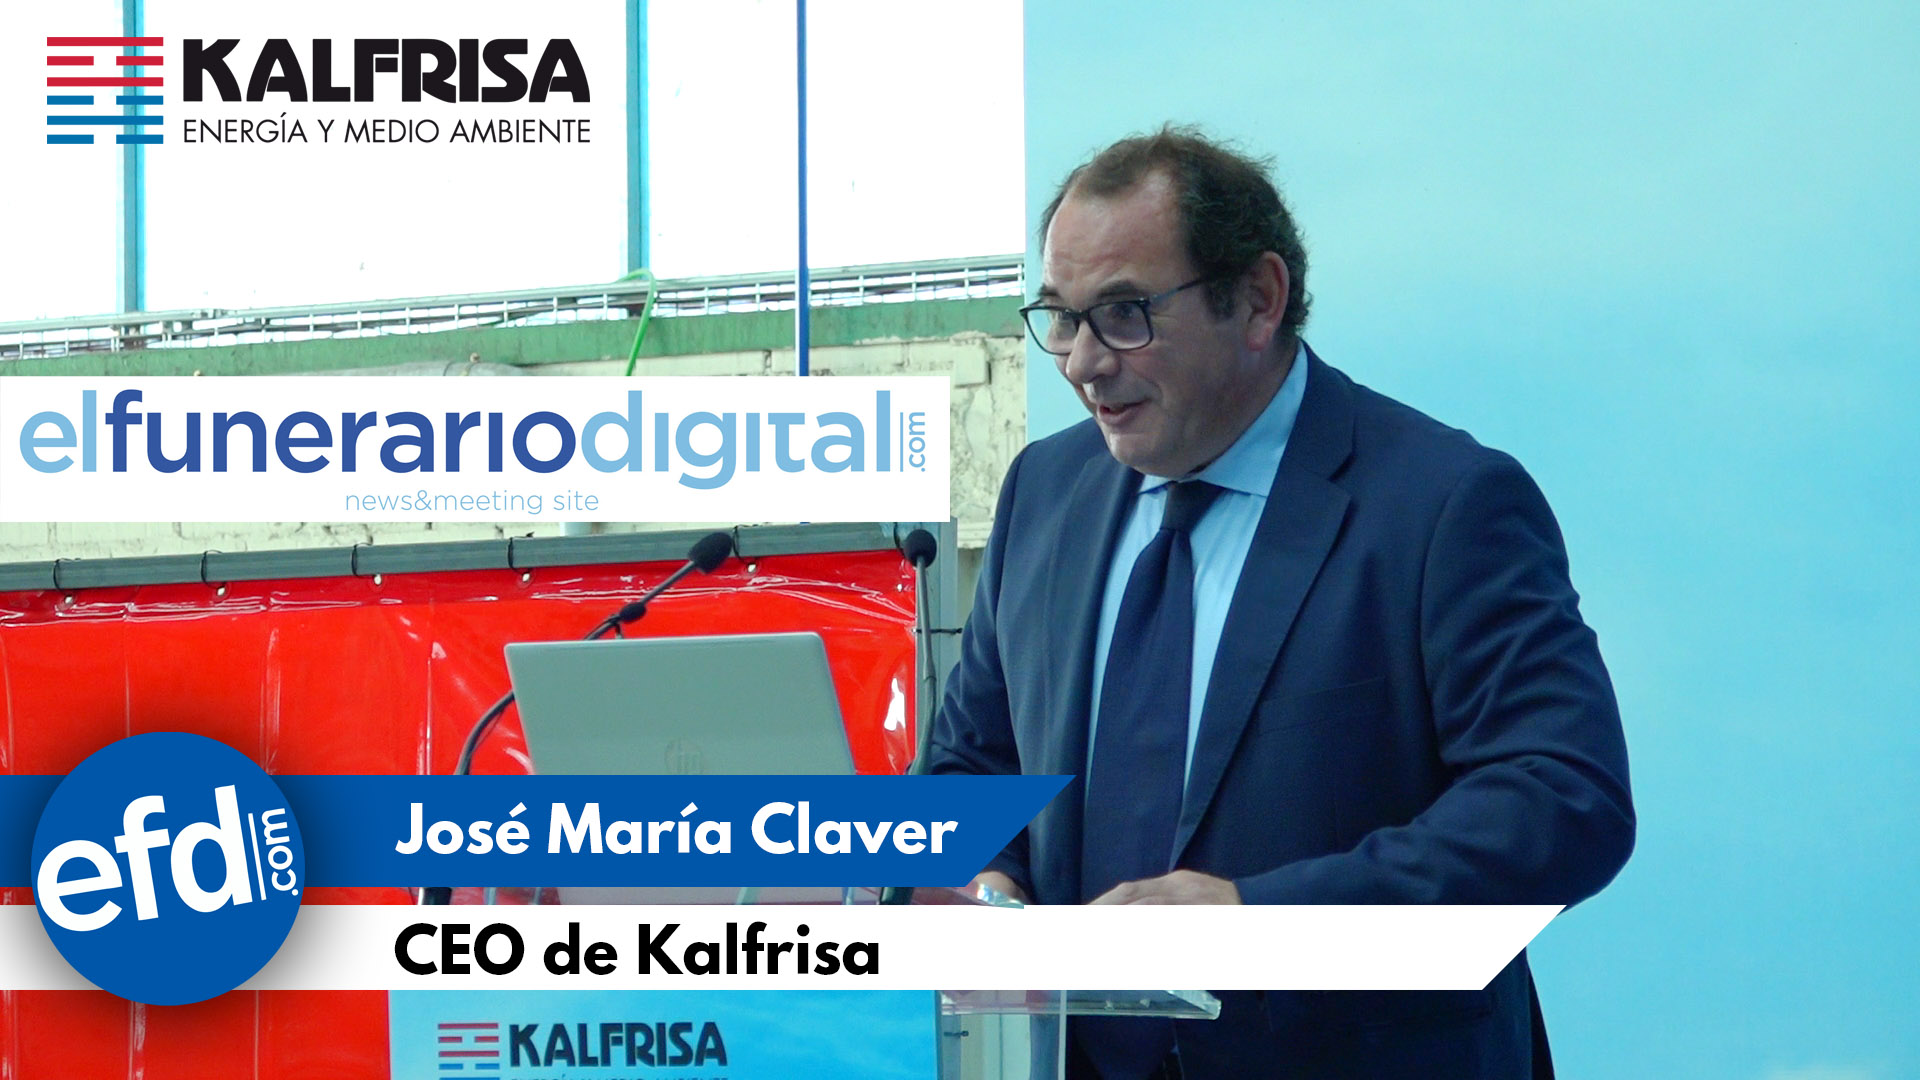 [VÍDEO] Presentación horno crematorio de hidrógeno: Intervención de José María Claver CEO de Kalfrisa